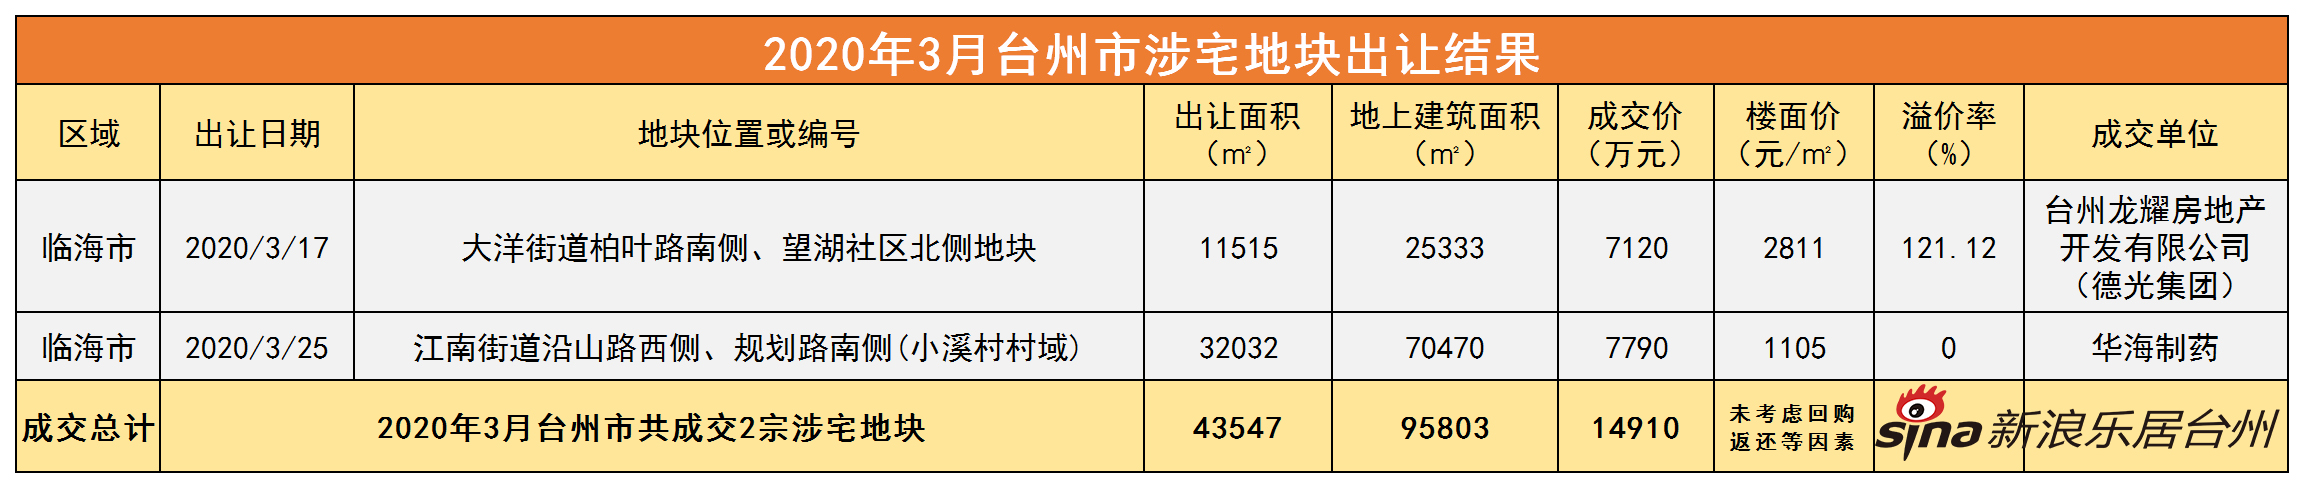 土拍月报 | 台州土地市场4月复苏可期